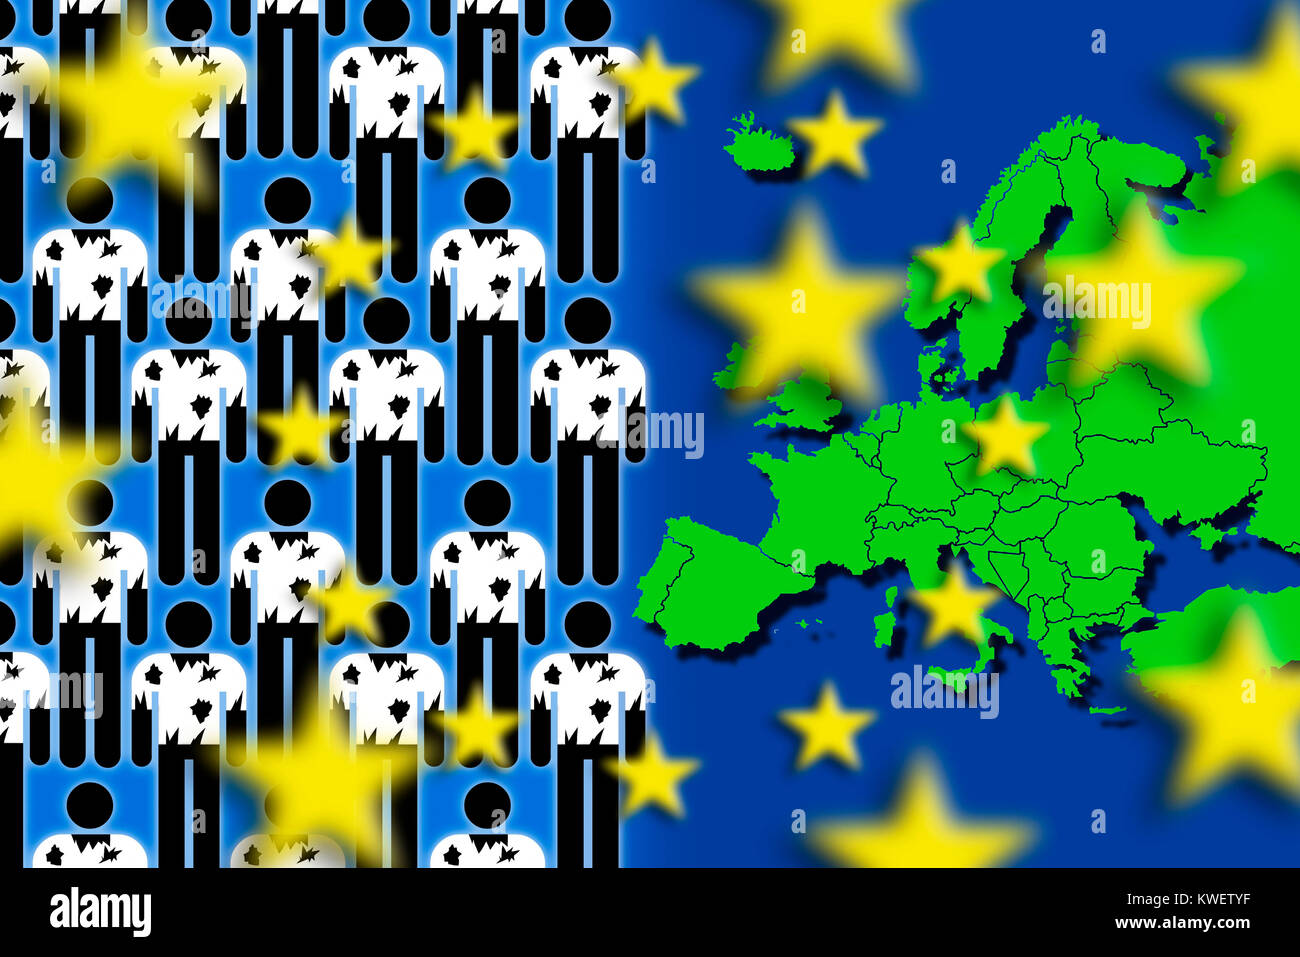 Les réfugiés et les cartes européennes, photo symbolique du stream de réfugiés vers l'Europe, und Flüchtlinge 1933-1945 Symbolfoto Flüchtlingsstrom Europakarte, nach Europa Banque D'Images